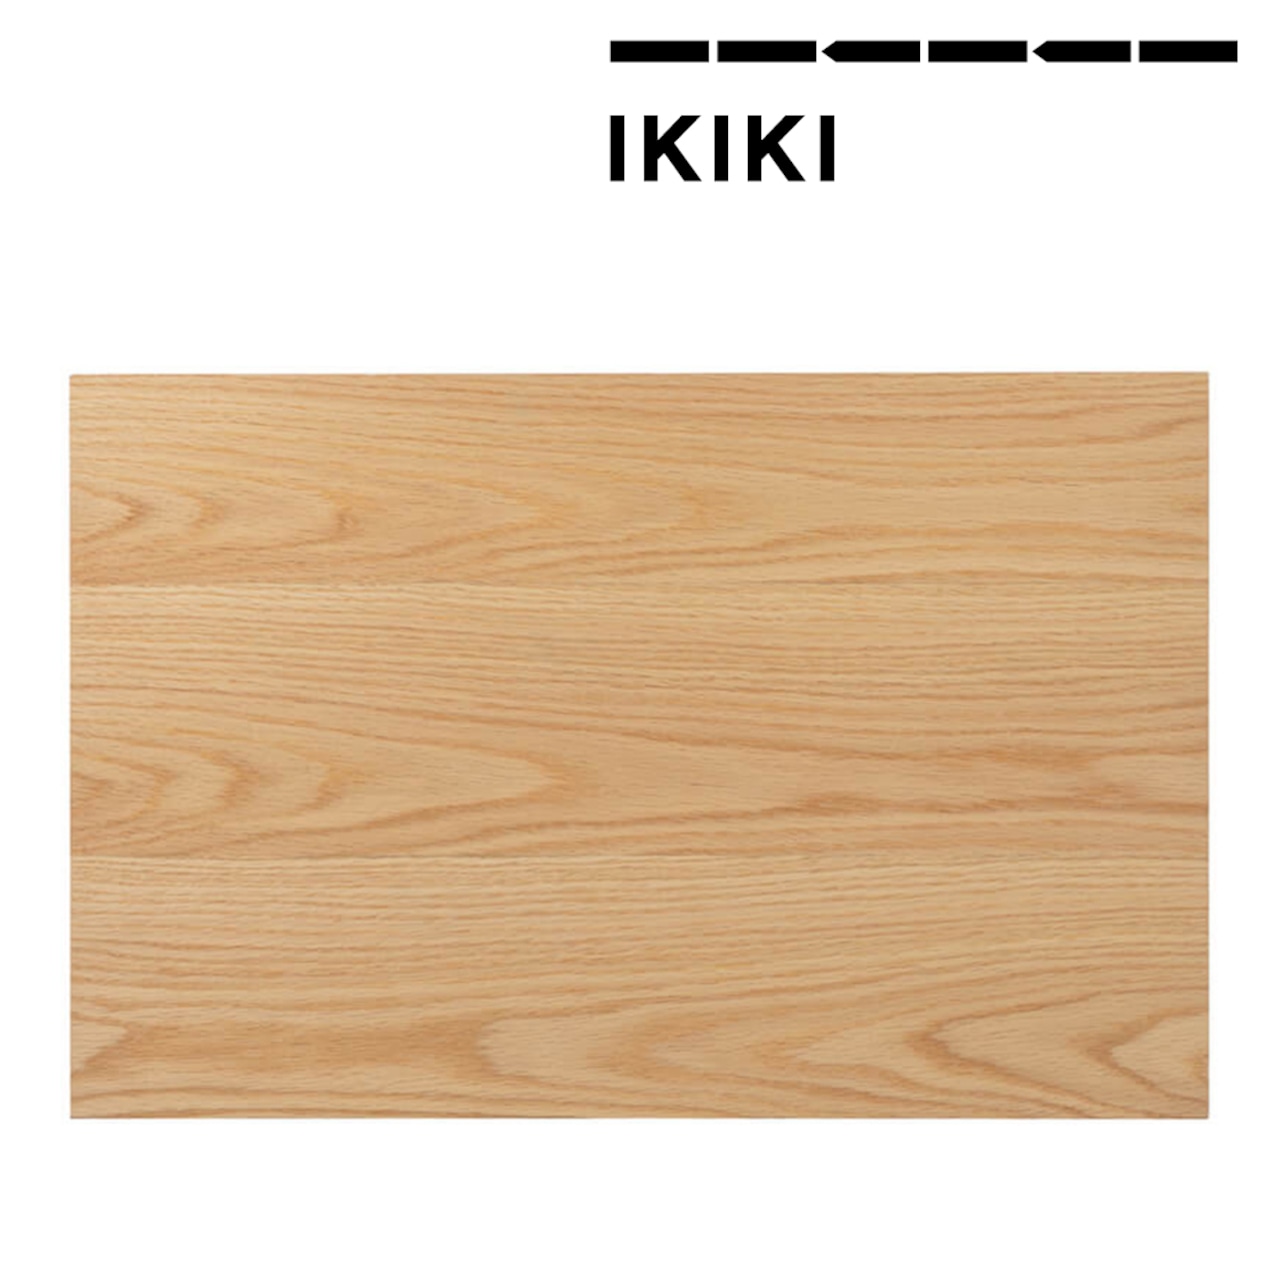 IKIKI(イキキ) エクステンション テーブル オーク 天然木材 機能コンテナ